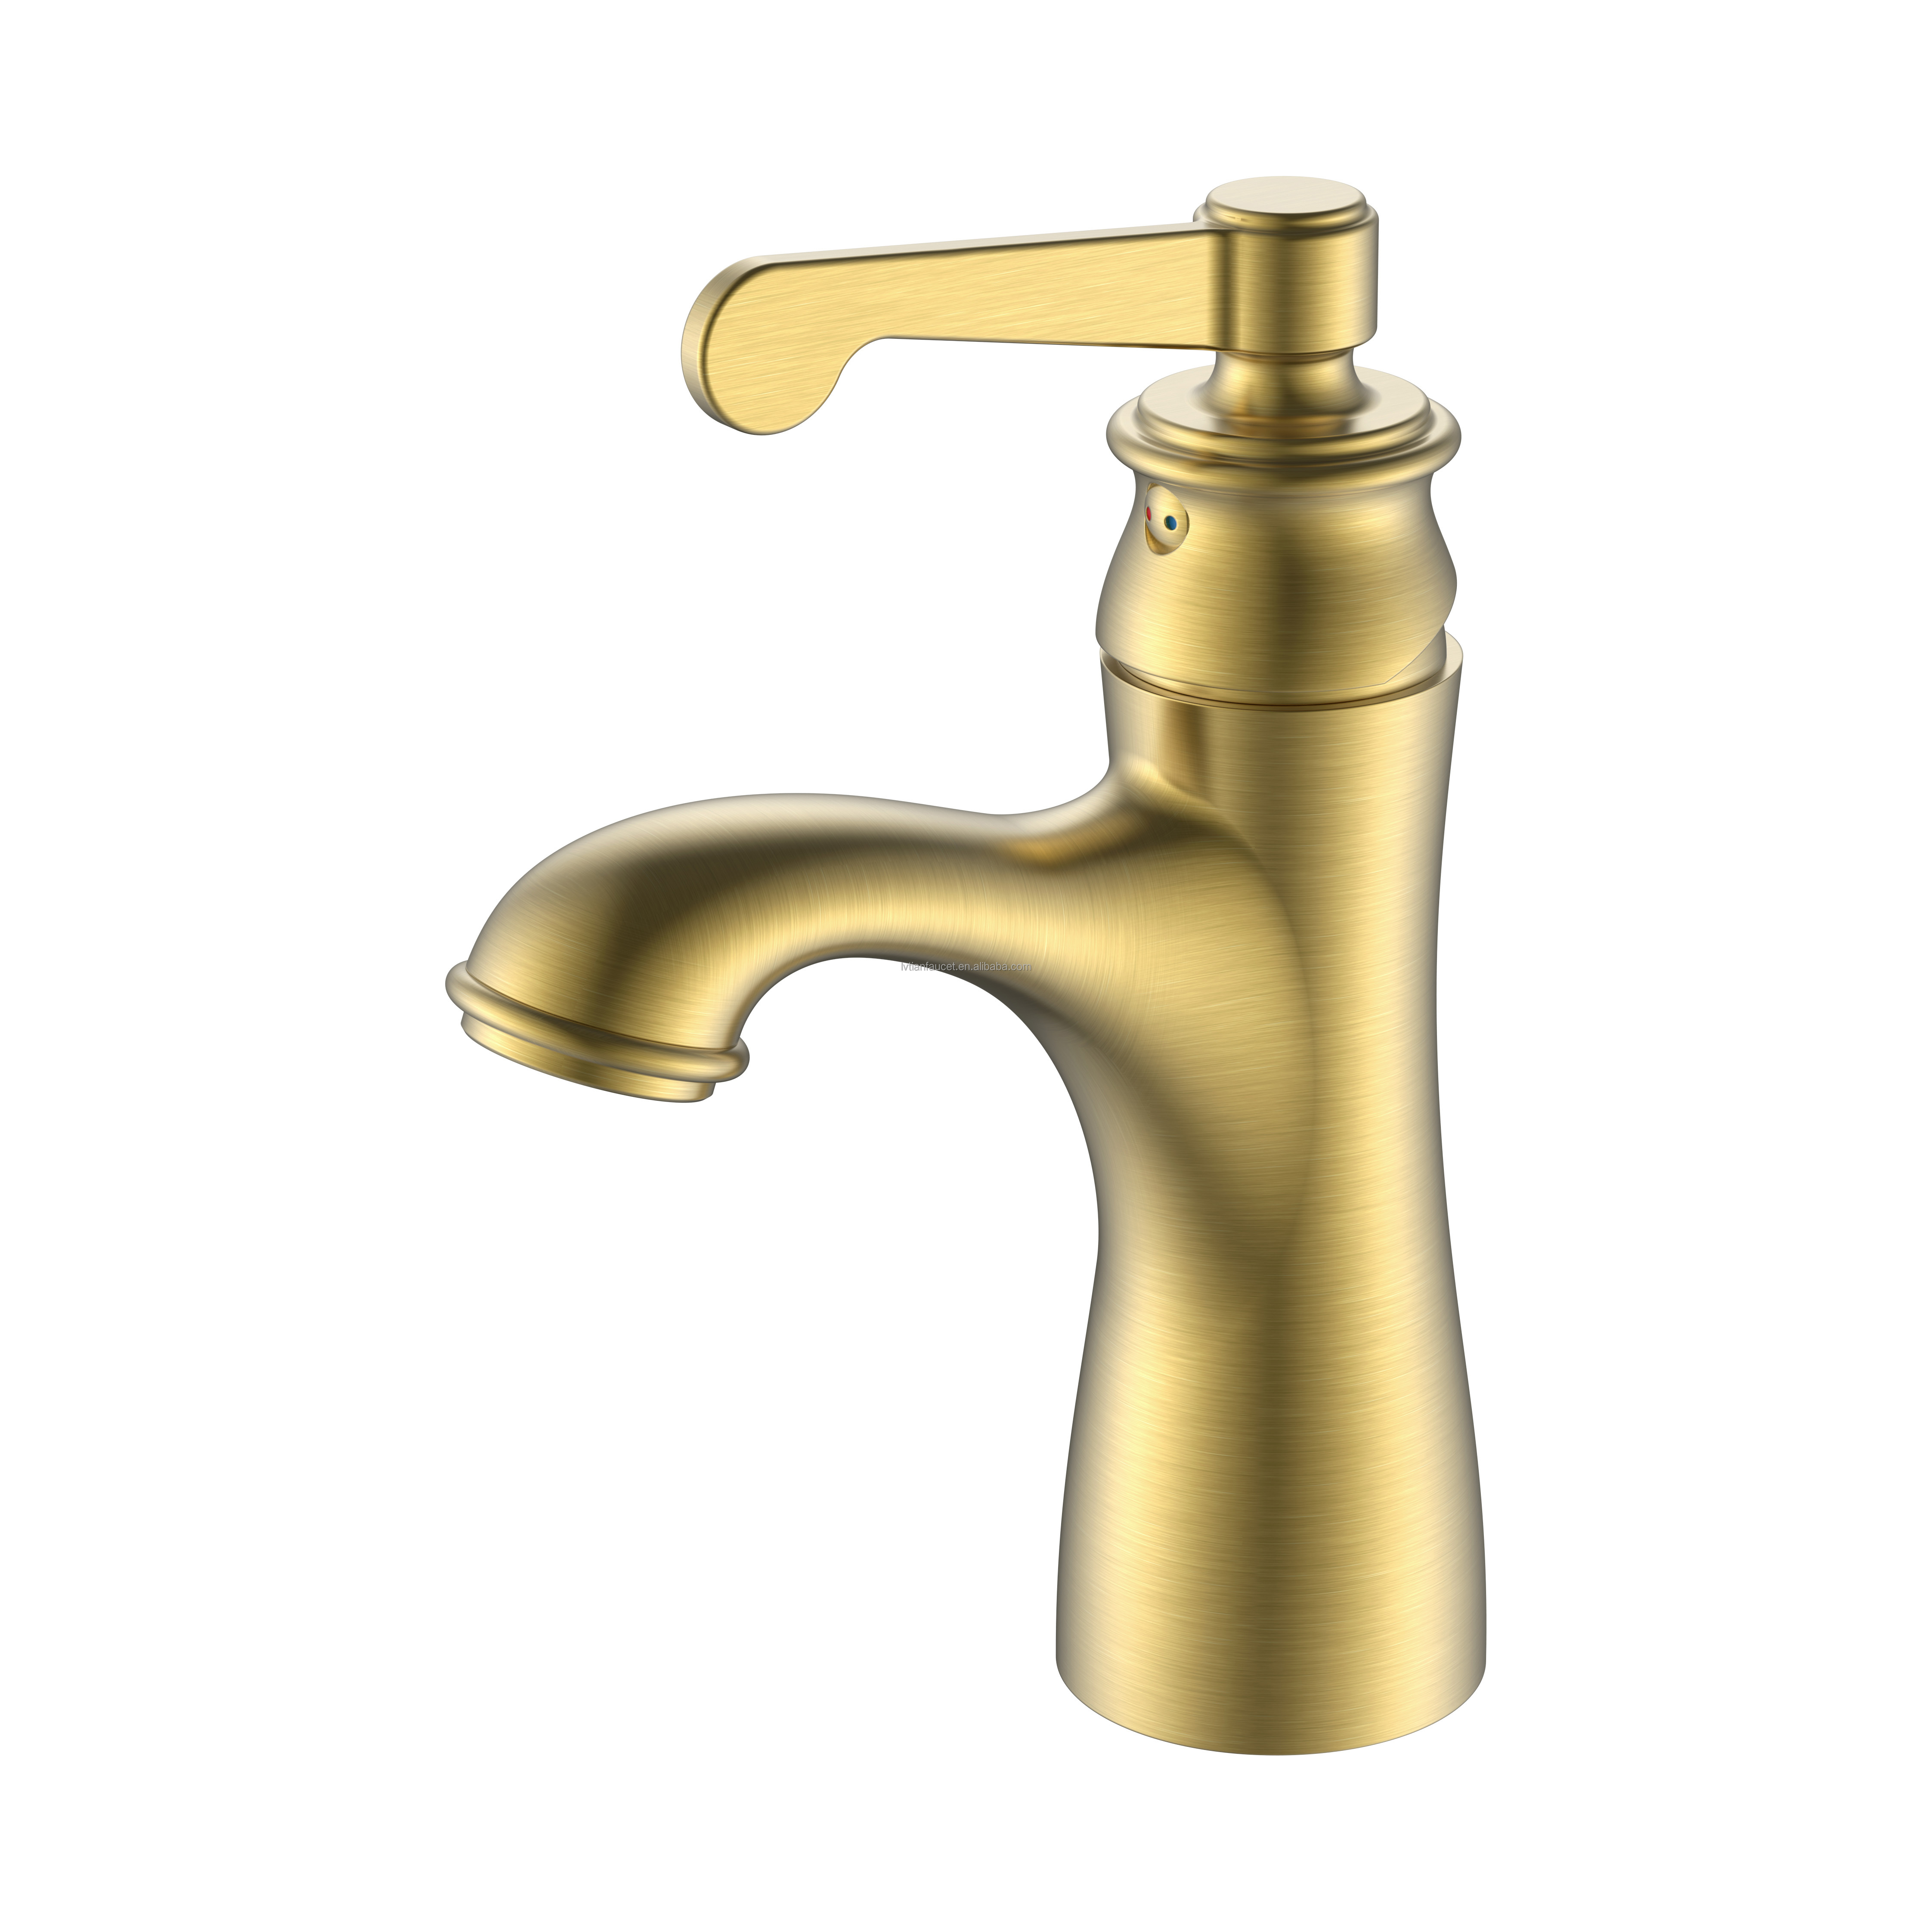 Steigern Sie die optische Attraktivität Ihres Duschraums mit Badezimmerarmaturen aus gebürstetem Gold